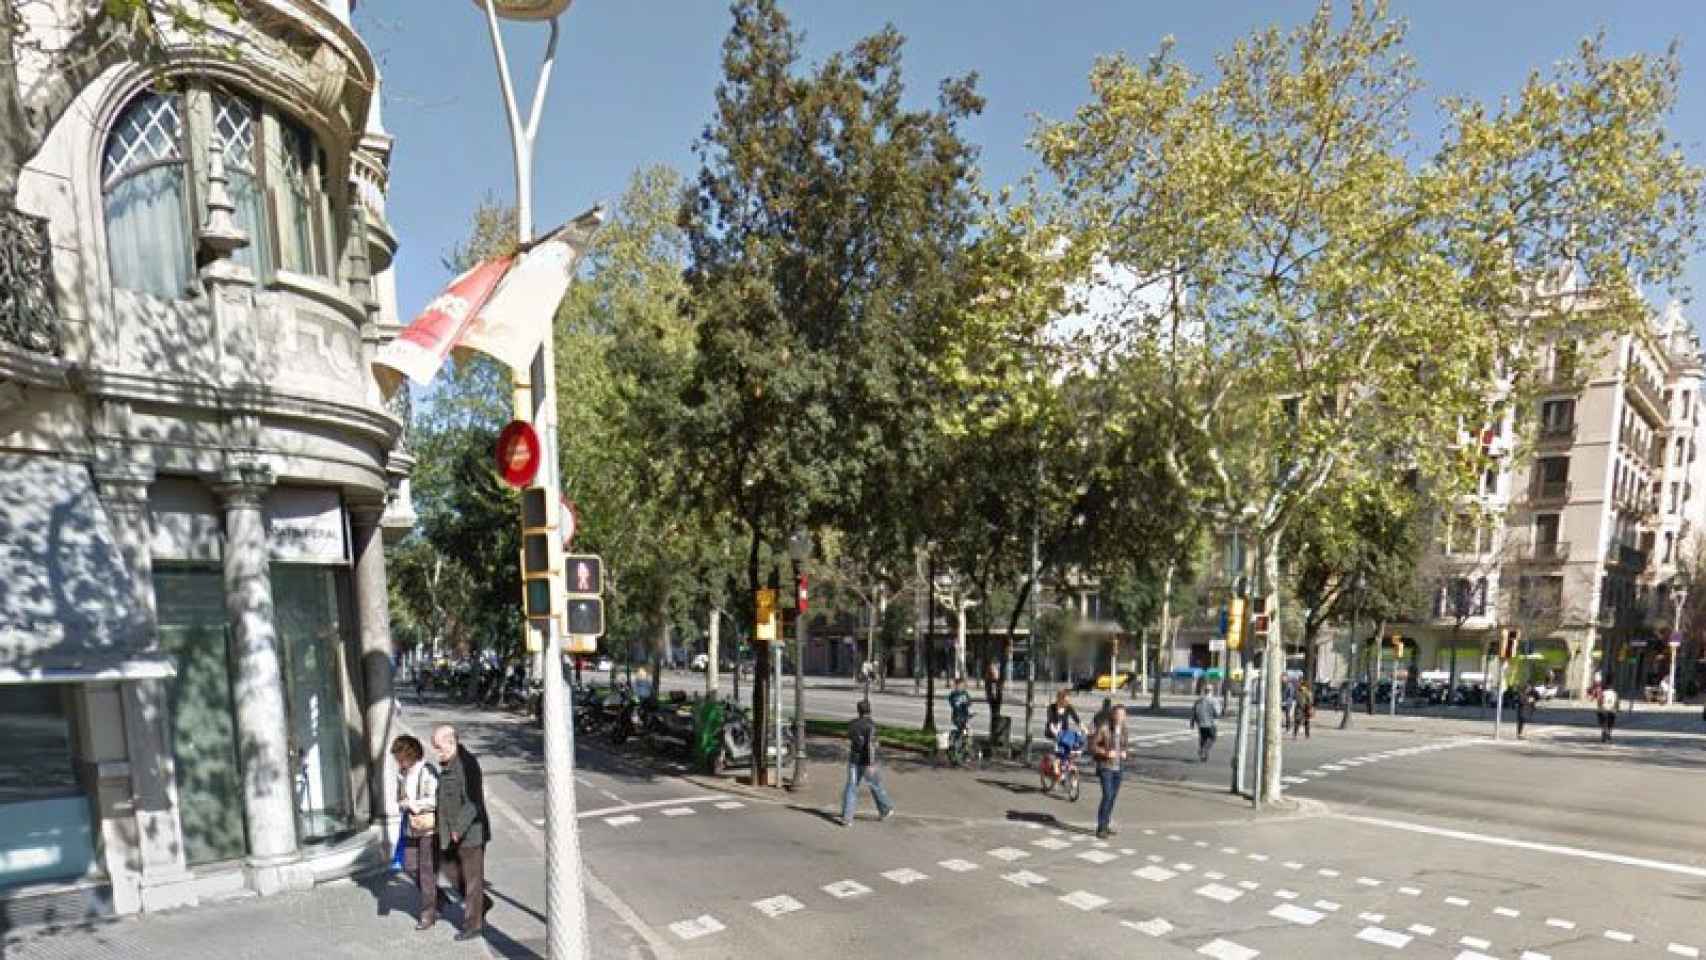 Confluencia entre Diagonal con la calle Pau Claris de Barcelona, donde tuvo lugar el atropello mortal